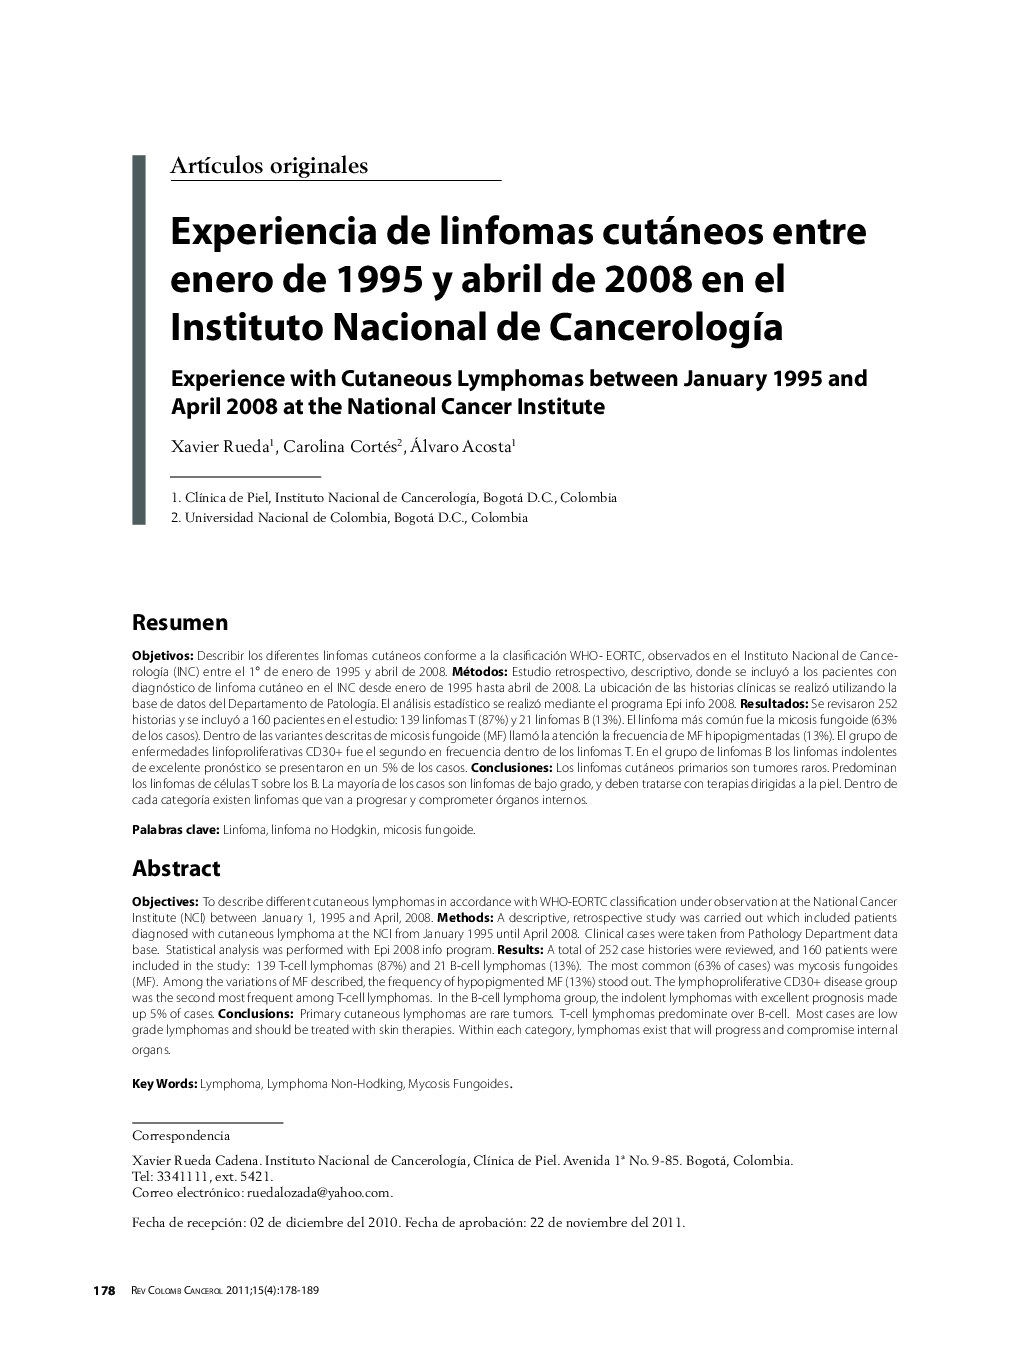 Experiencia de linfomas cutáneos entre enero de 1995 y abril de 2008 en el Instituto Nacional de CancerologÃ­aExperience with Cutaneous Lymphomas between January 1995 and April 2008 at the National Cancer Institute